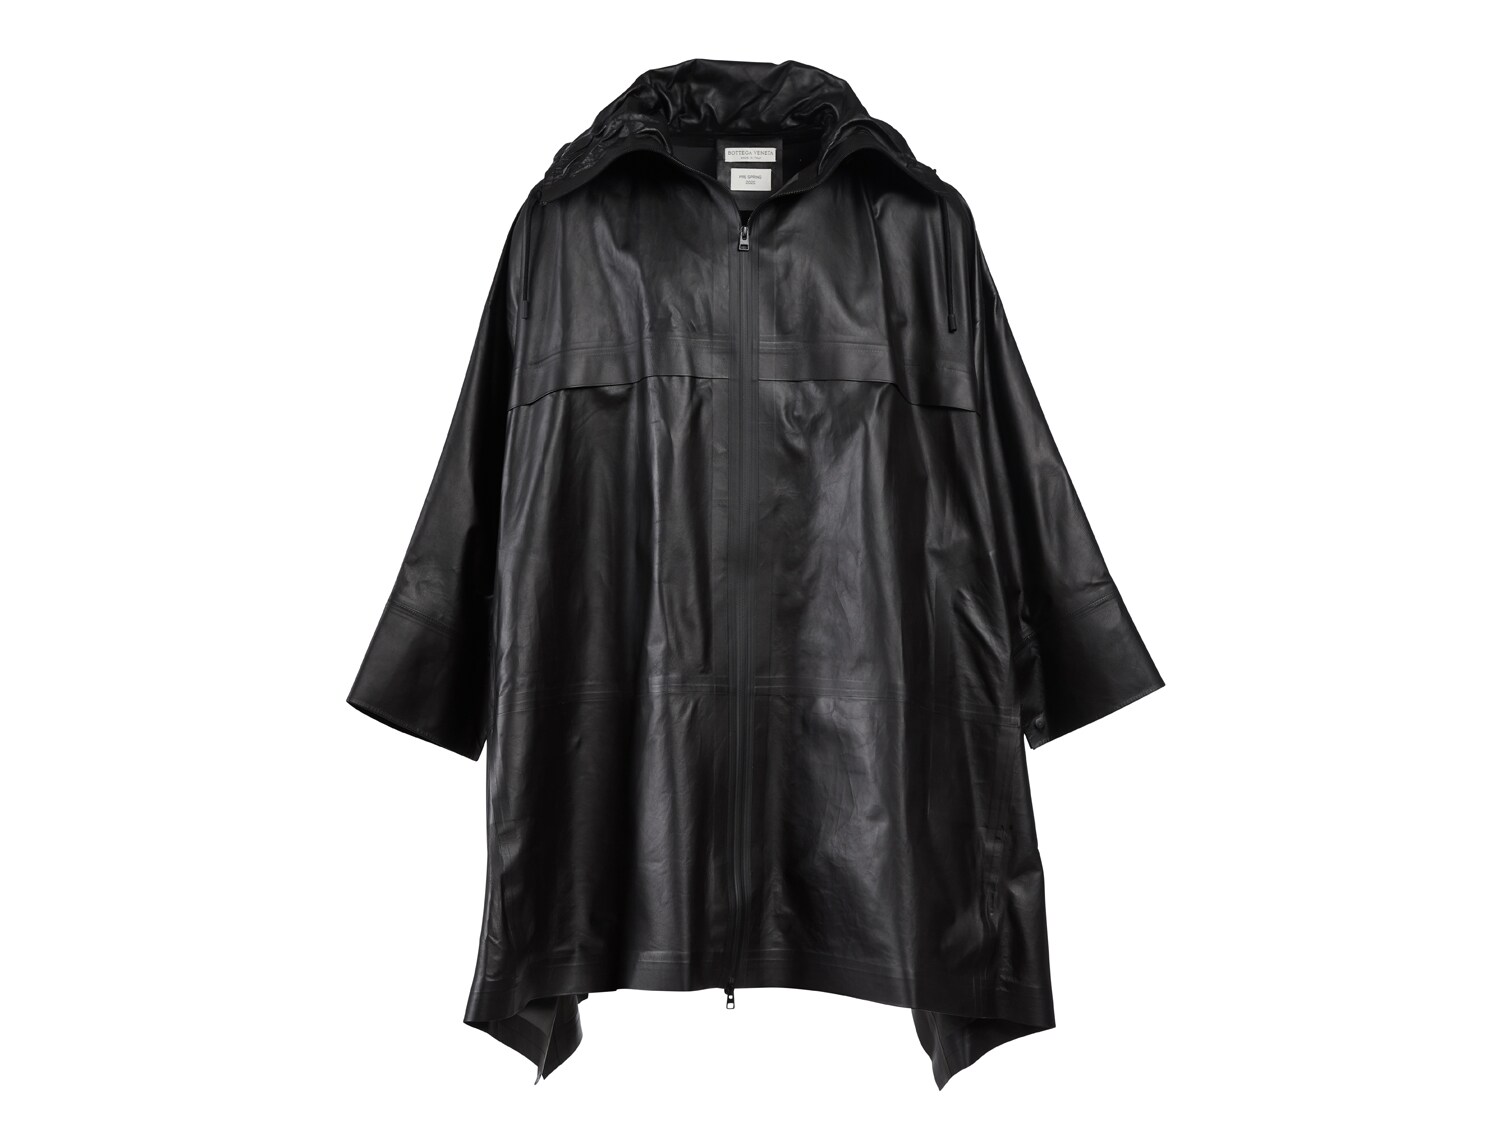 Bottega Veneta® Men's Crocodile-Effect Leather Coat in Barrel. Shop online  now.